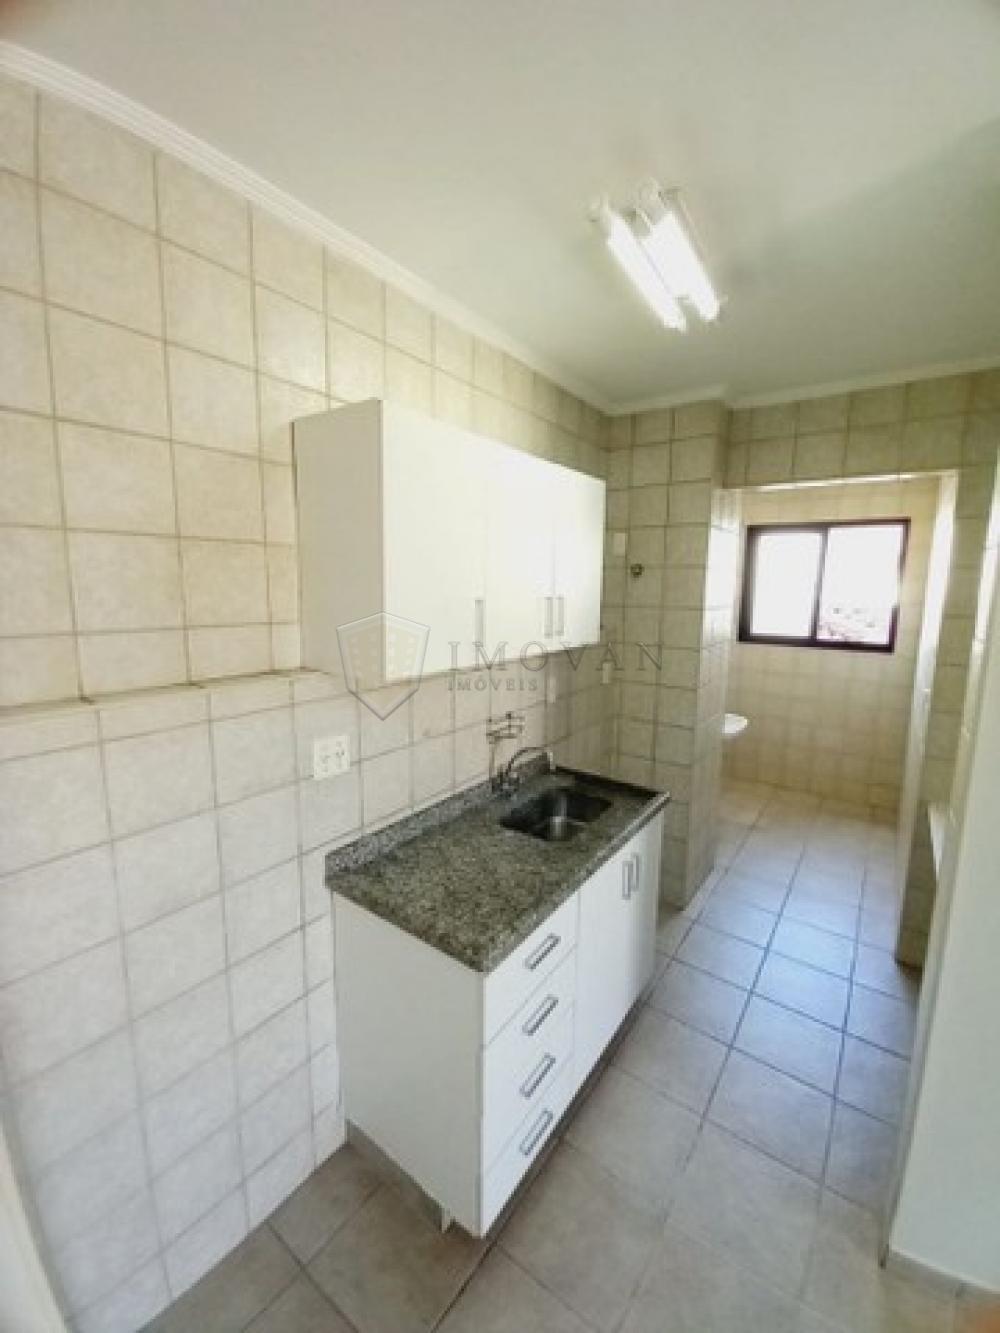 Comprar Apartamento / Padrão em Ribeirão Preto R$ 225.000,00 - Foto 3